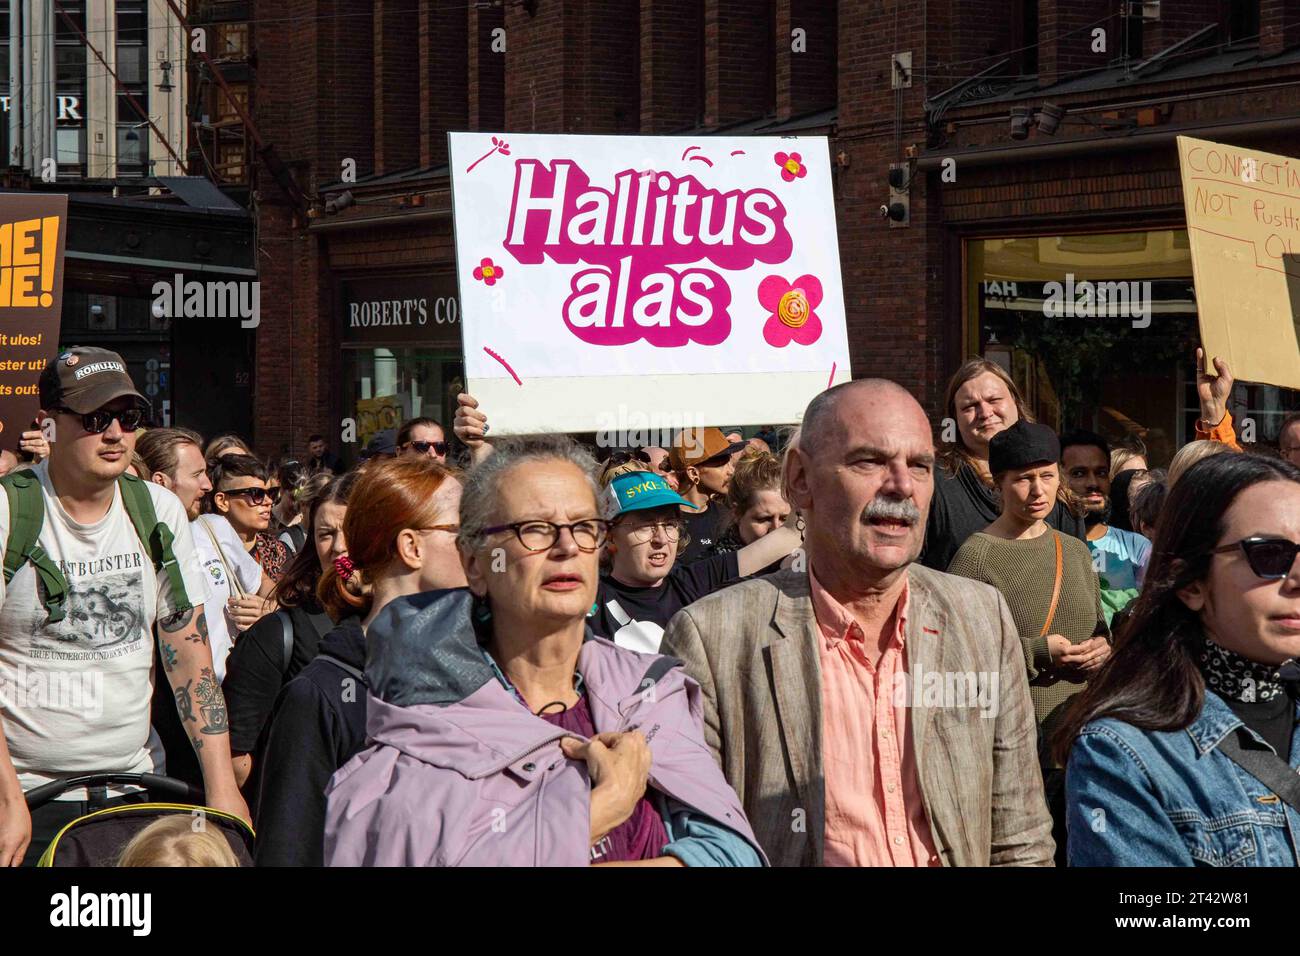 Hallitus alas. Demonstranten marschieren auf Aleksanterinkatu auf mich zu emme vaikene! Anti-Rassismus-Demonstration in Helsinki, Finnland. Stockfoto